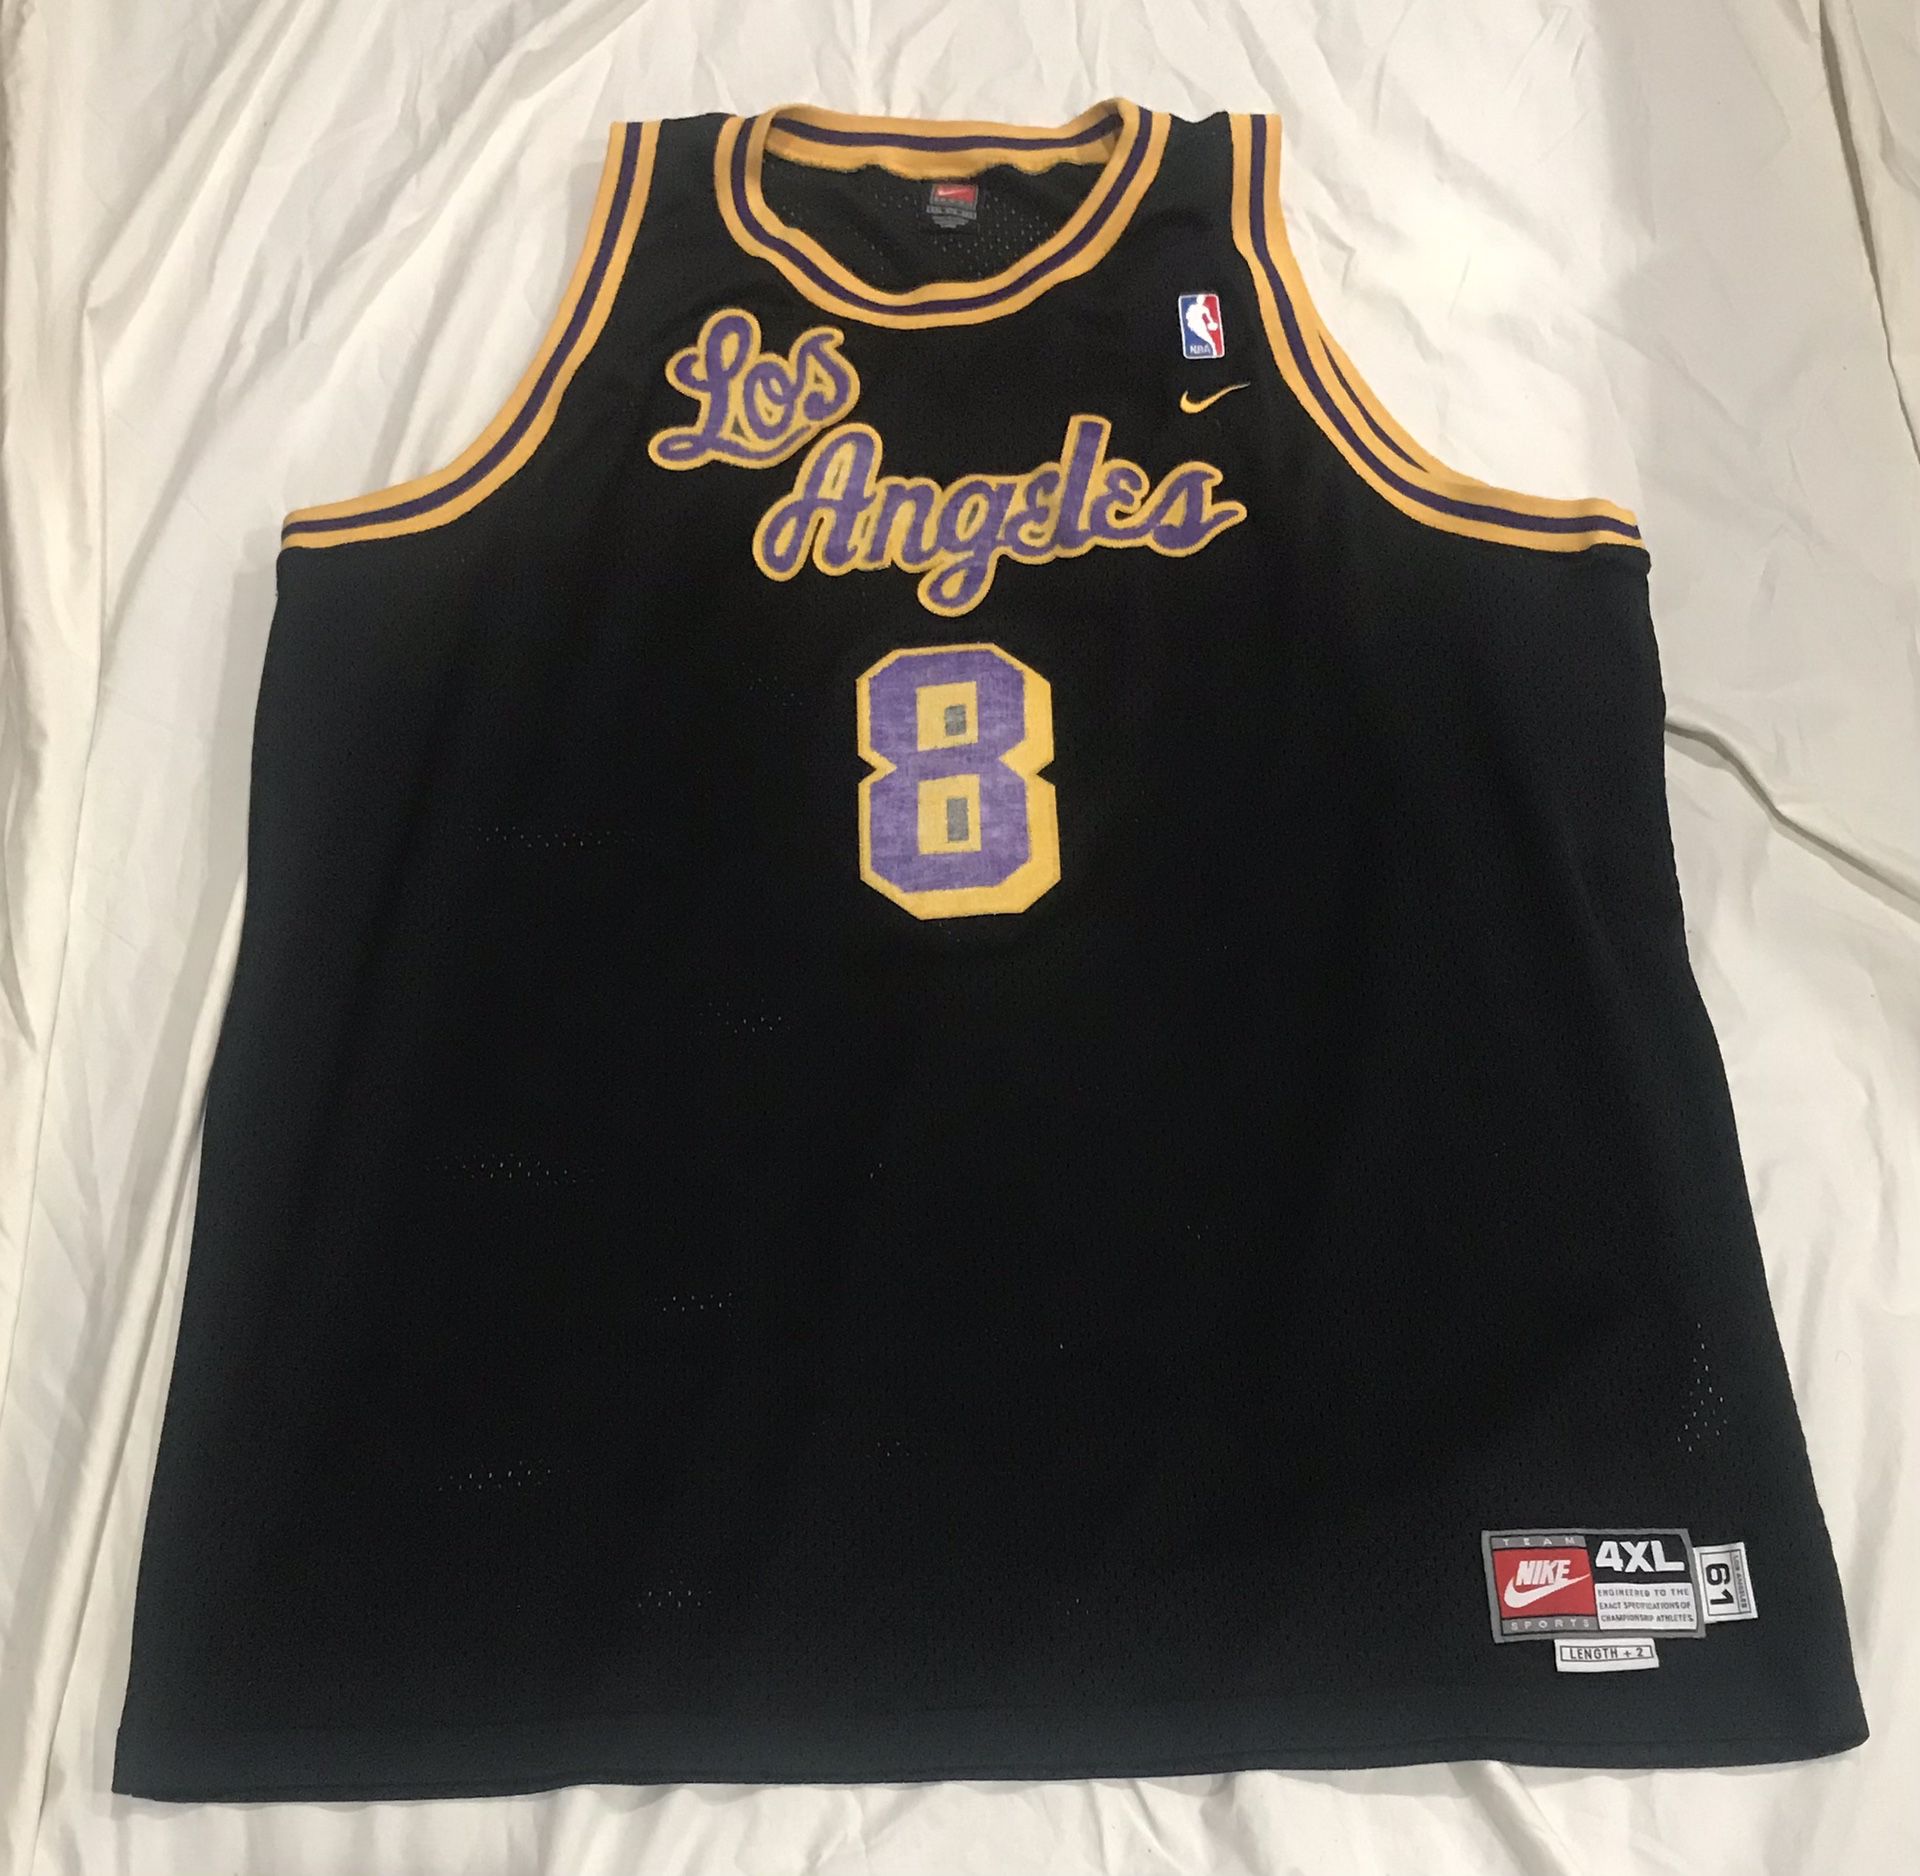 Kobe Bryant Black Lakers Swingman Nike Jersey Size 4xl